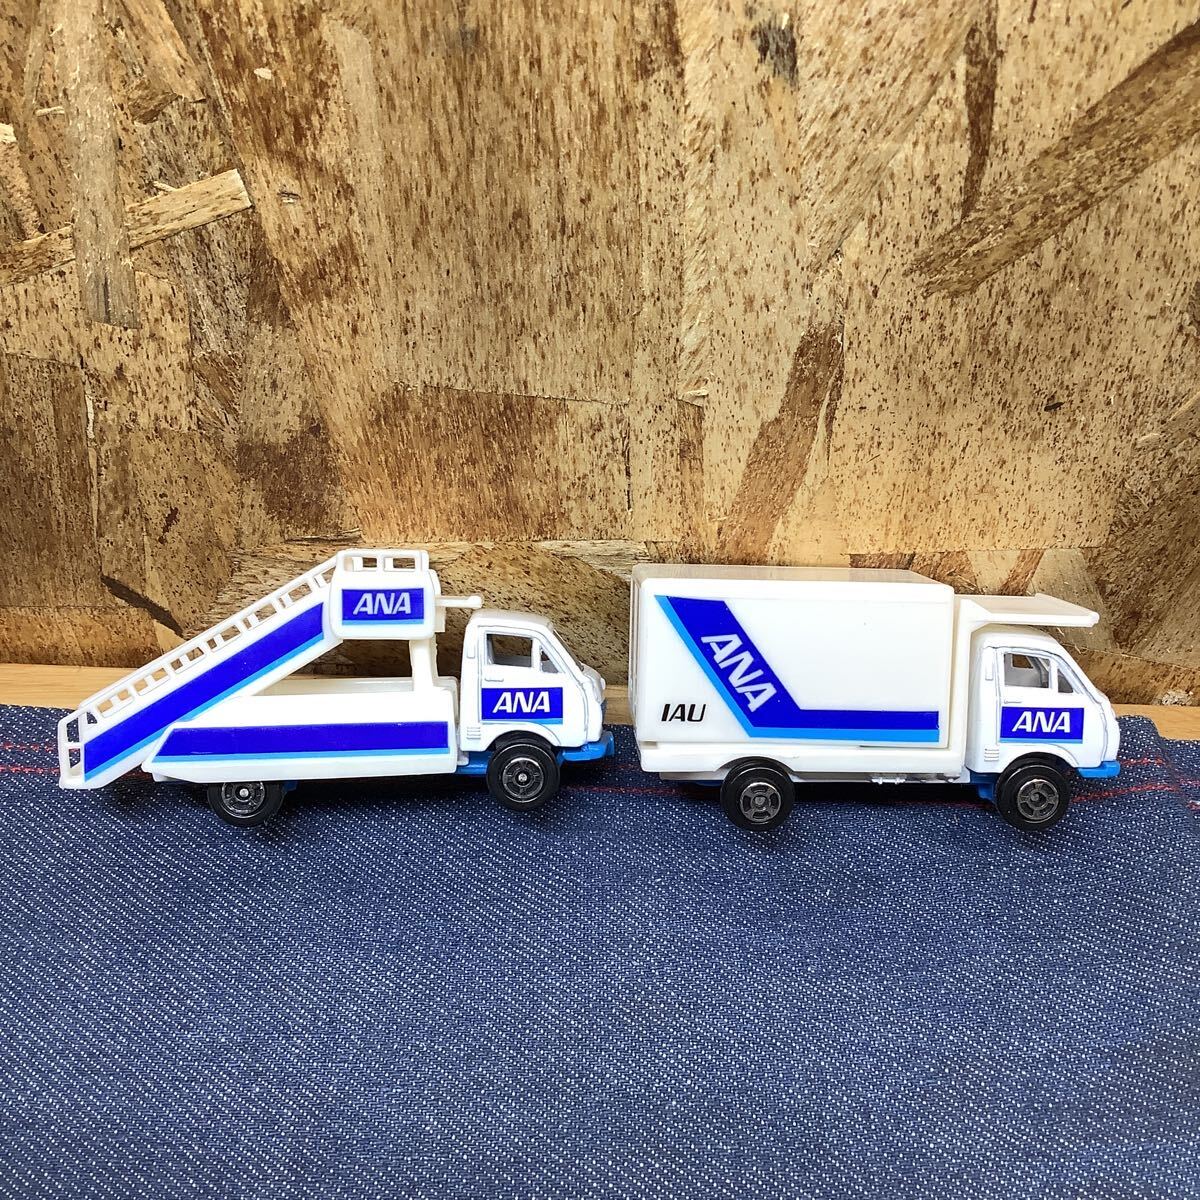 送料無料【Sて1342】ANA 空港セットANA アナ ダイキャスト エアポートセット エアバス おもちゃ模型の画像2